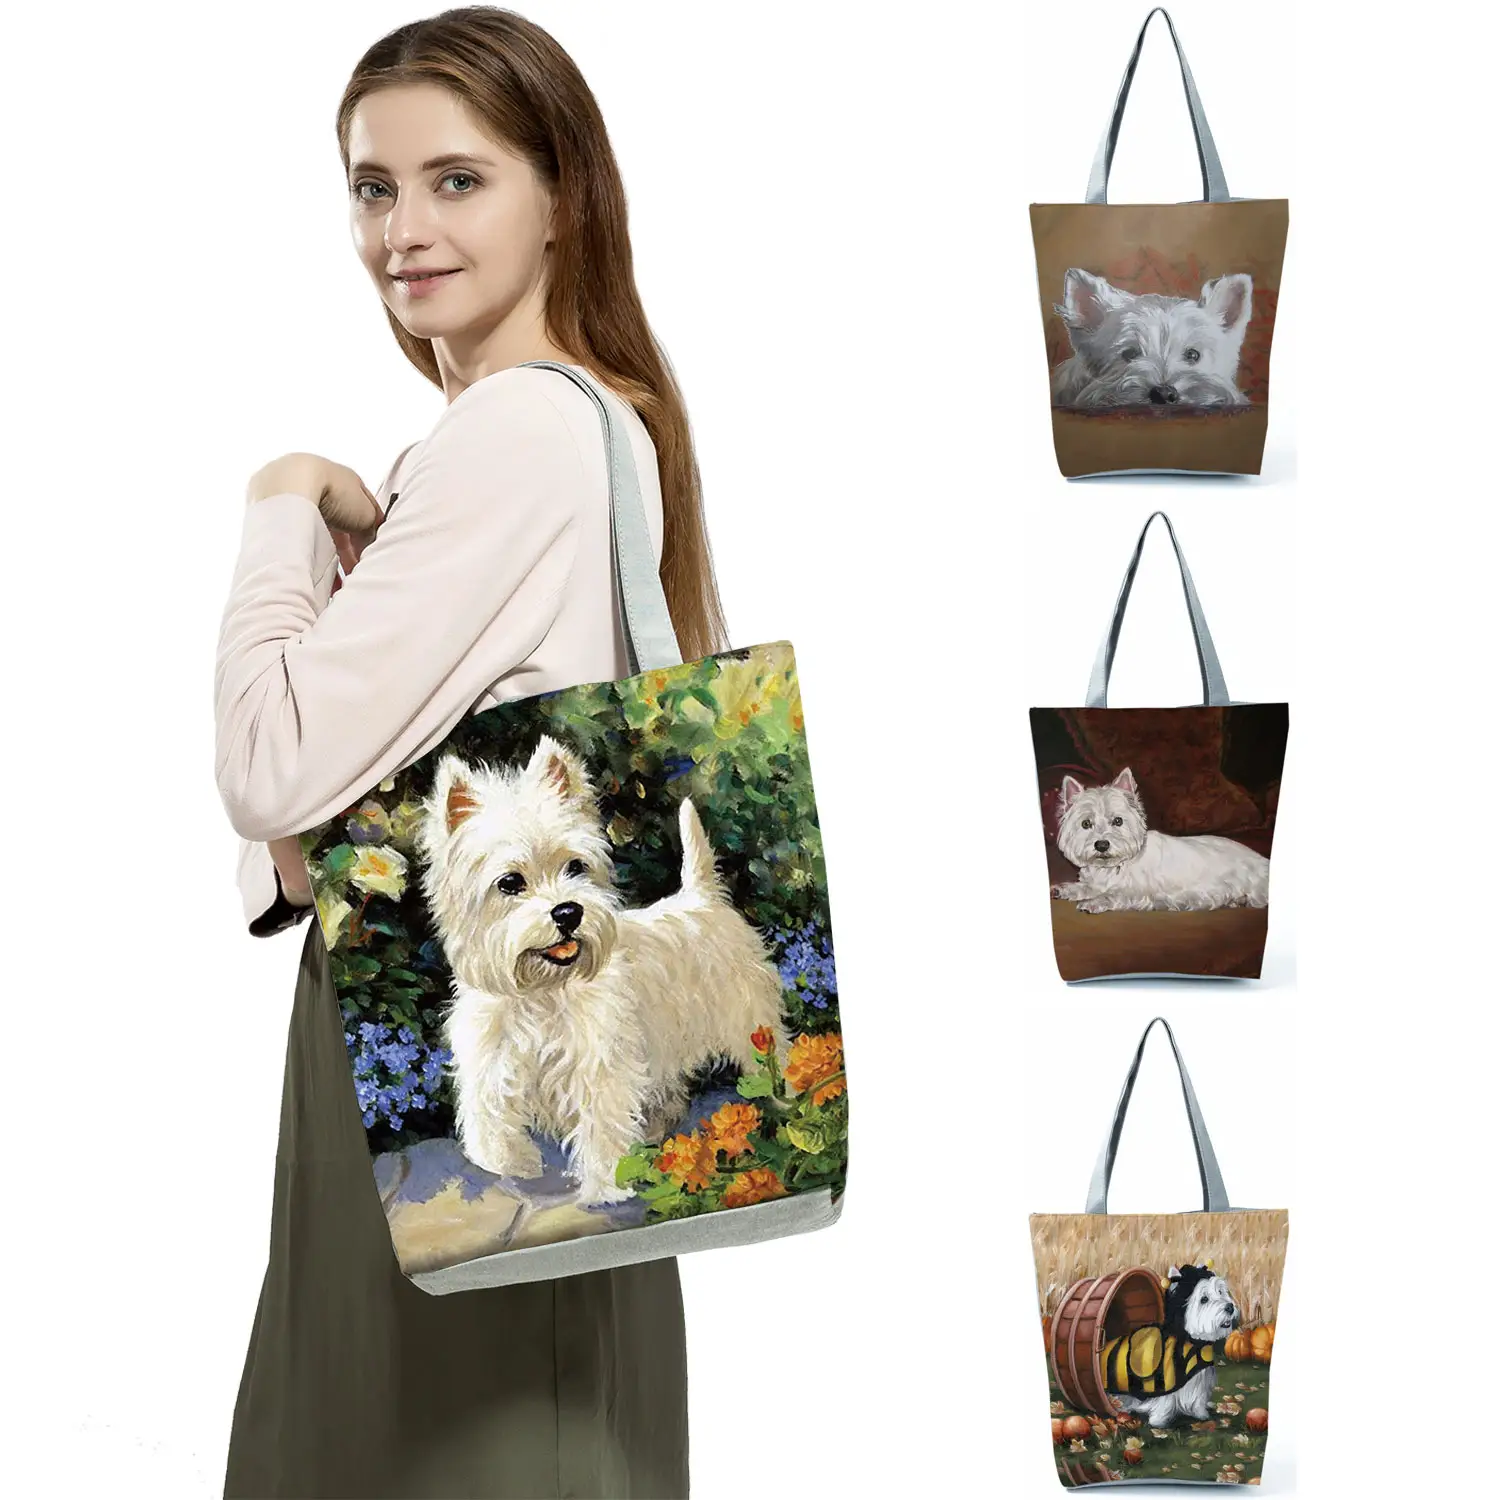 Unieke Ontwerp Westie Hond Schilderen Vierkante Handtas Voor Vrouwen Winkelen Shopper Tassen Grote Capaciteit Draagbare Goedkope Bakken Groothandel